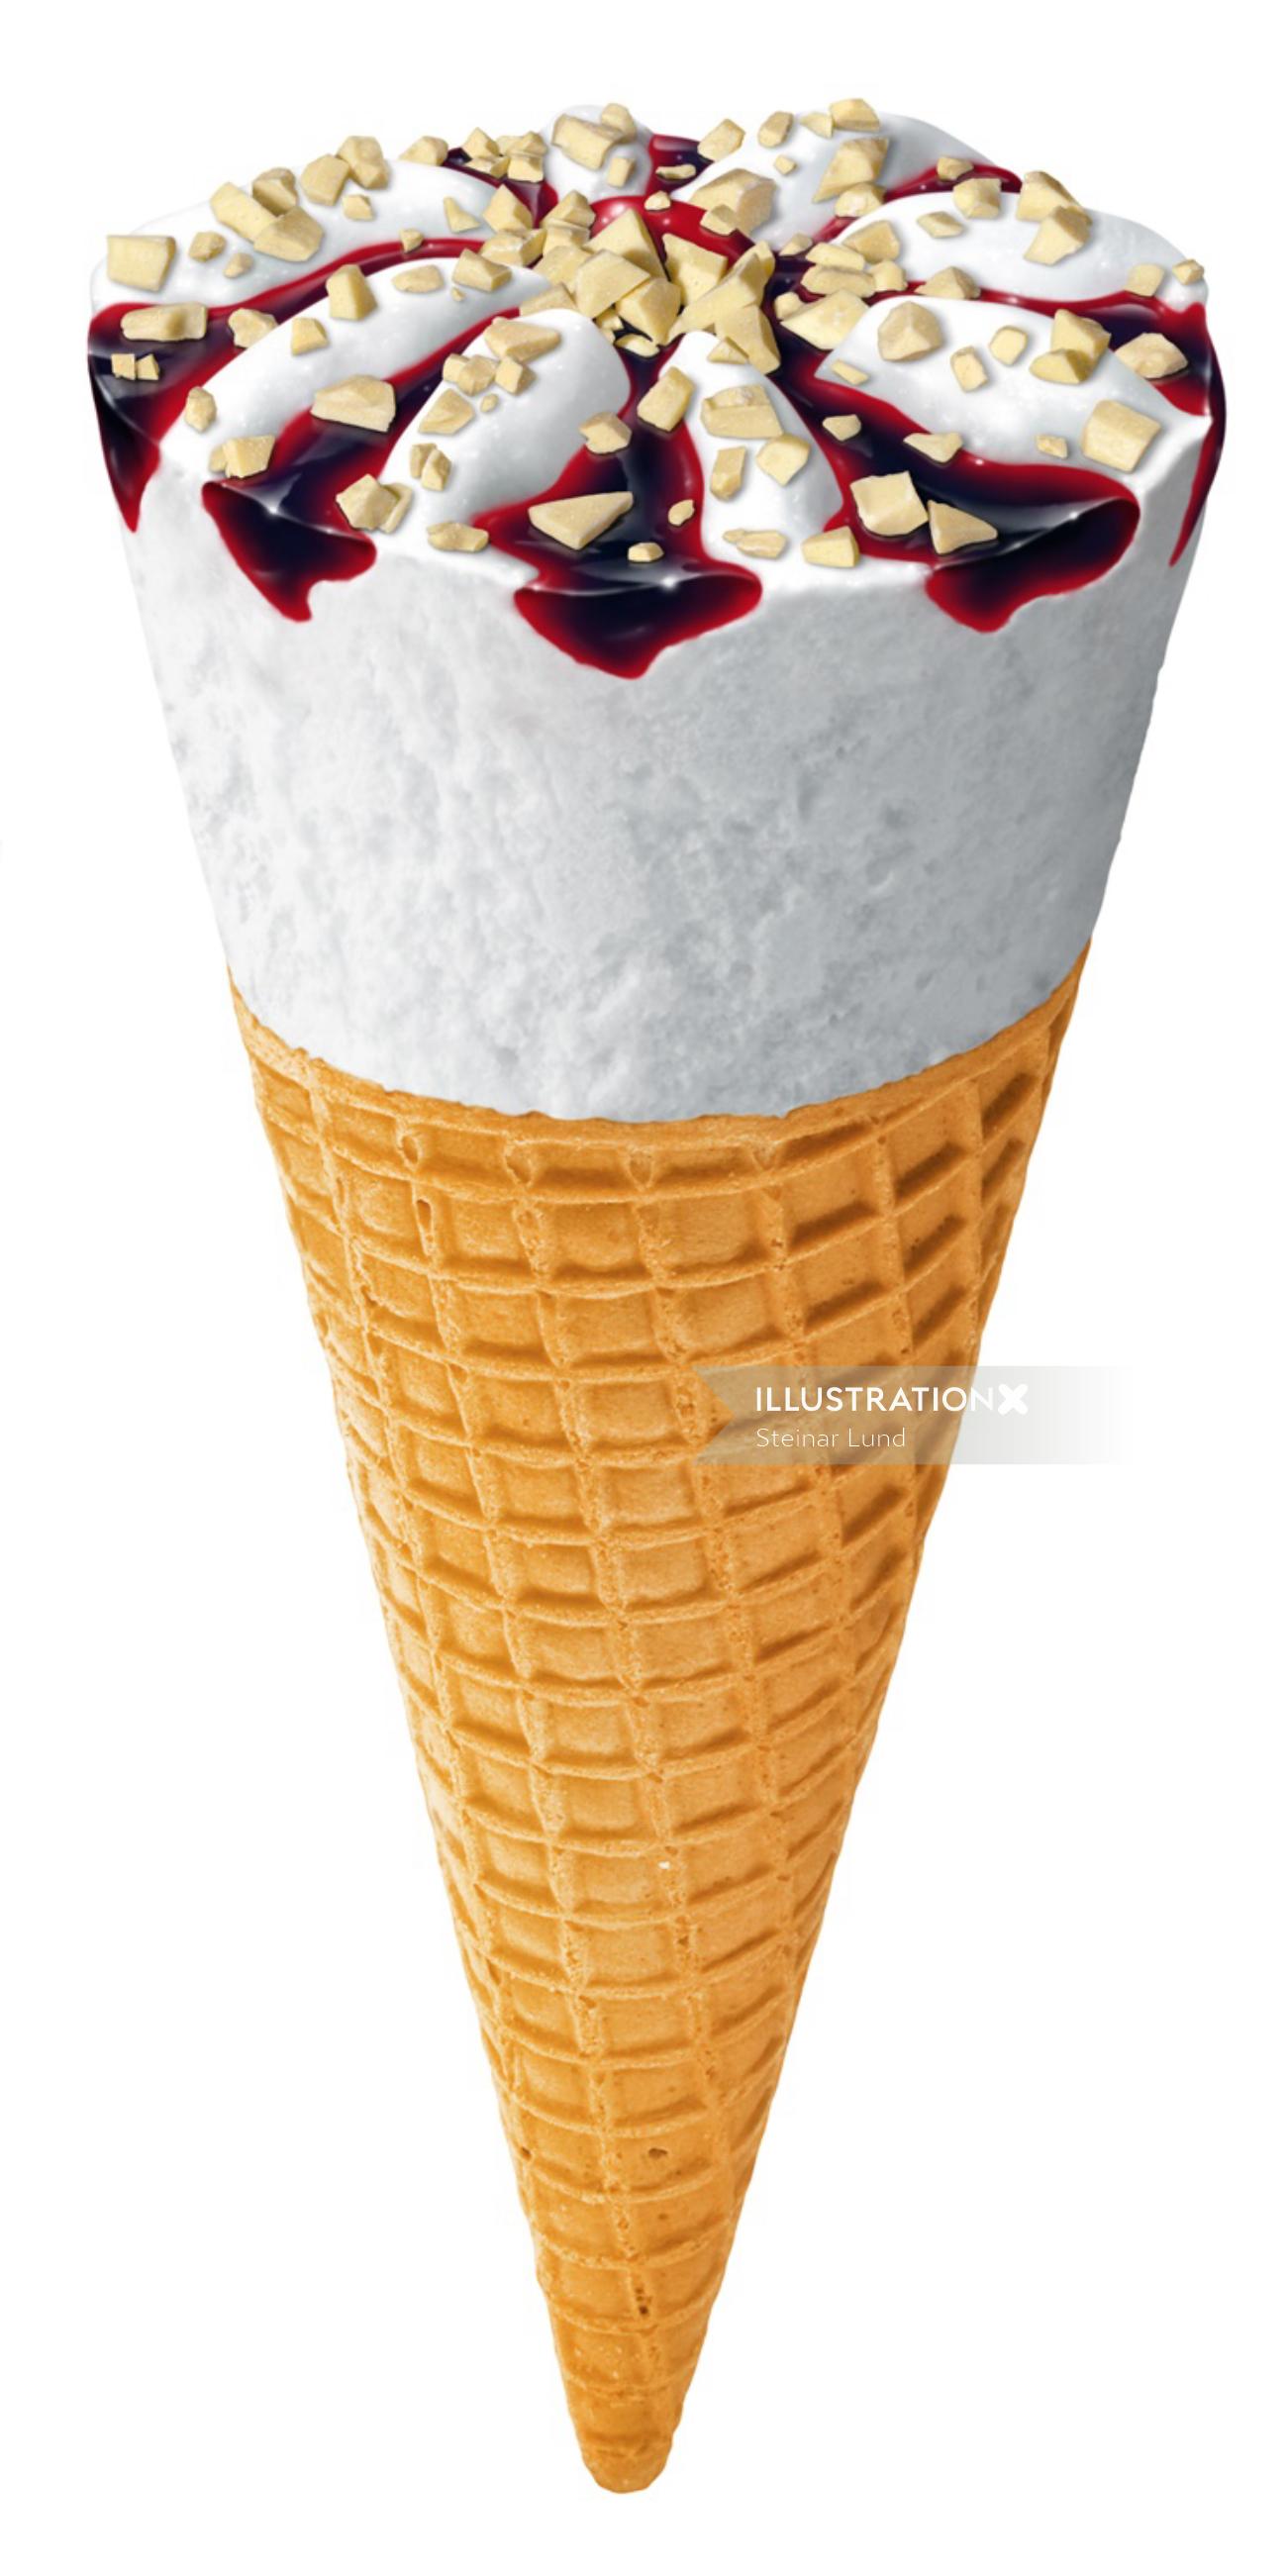 Cornet de crème glacée avec sauce aux fruits et garnitures au chocolat blanc